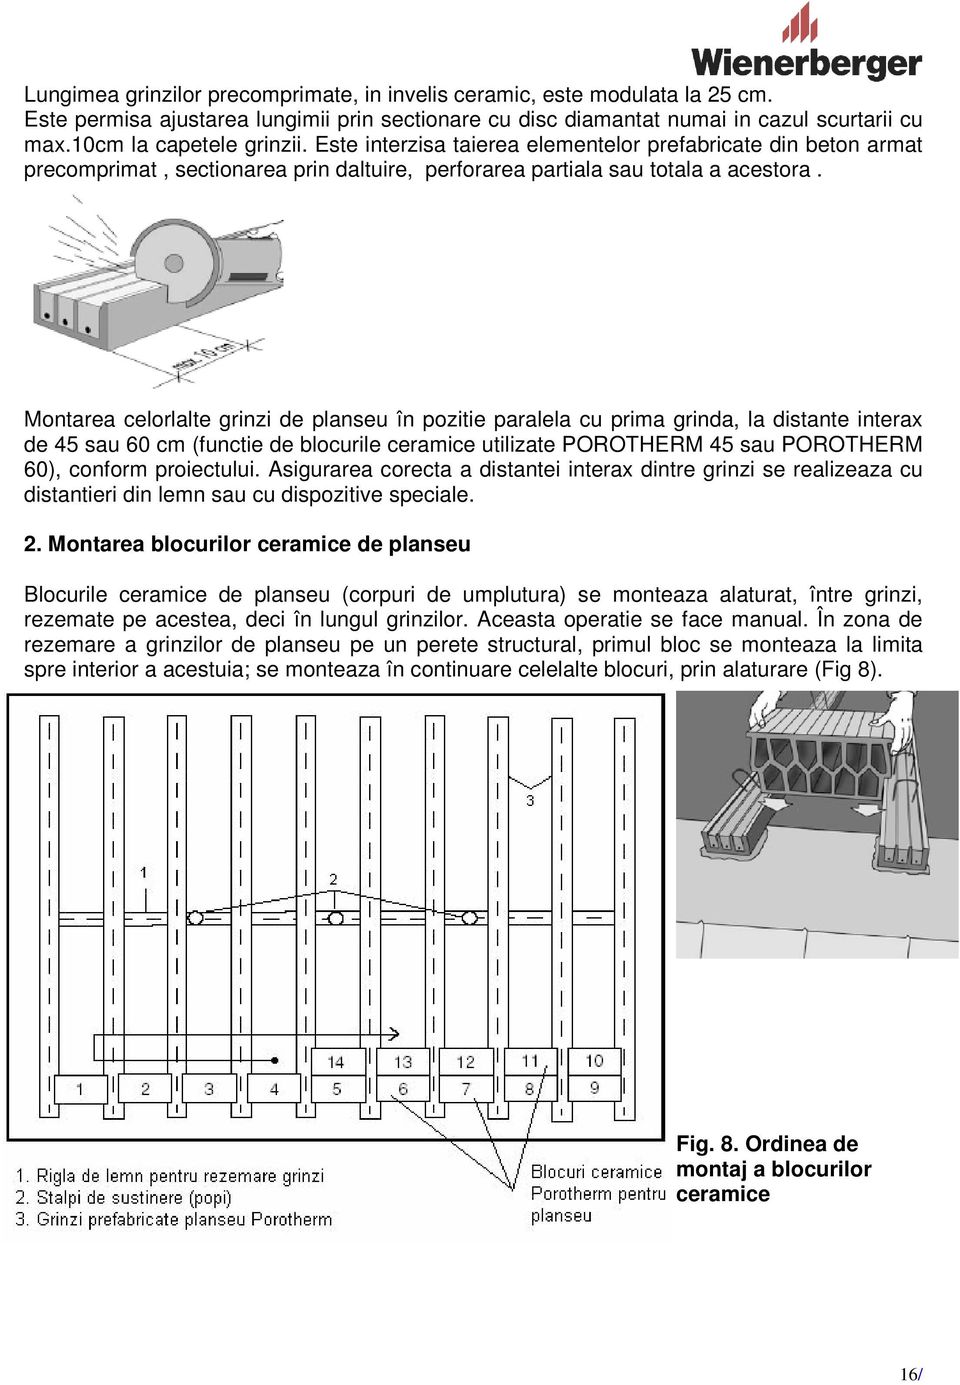 Montarea celorlalte grinzi de planseu în pozitie paralela cu prima grinda, la distante interax de 45 sau 60 cm (functie de blocurile ceramice utilizate POROTHERM 45 sau POROTHERM 60), conform